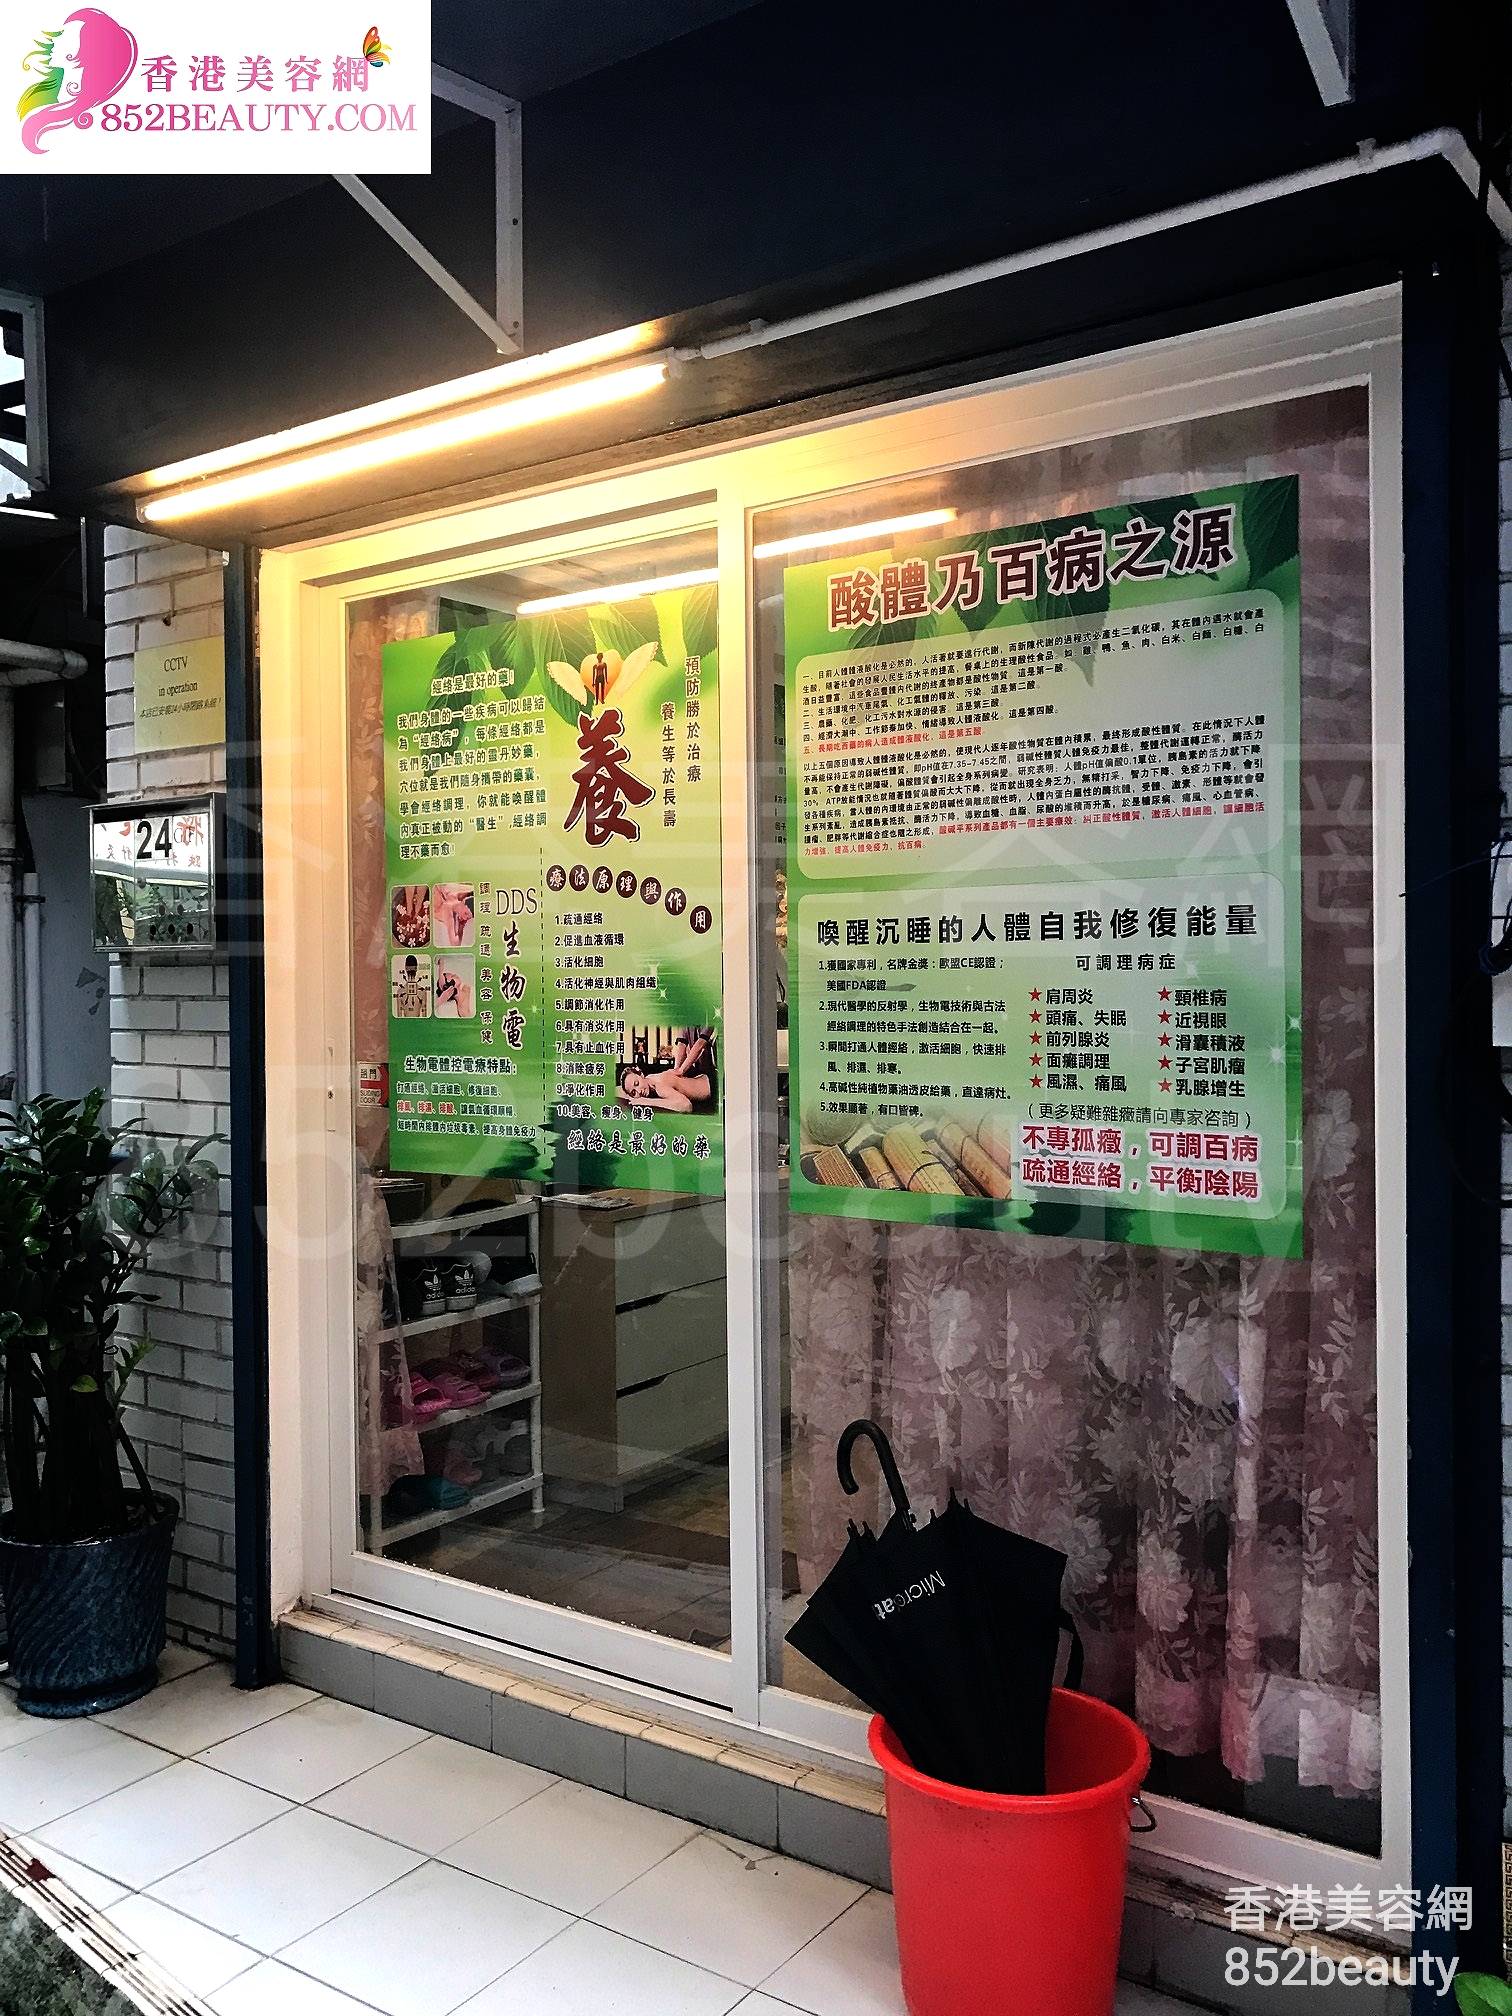 香港美容網 Hong Kong Beauty Salon 美容院 / 美容師: 經典養生館